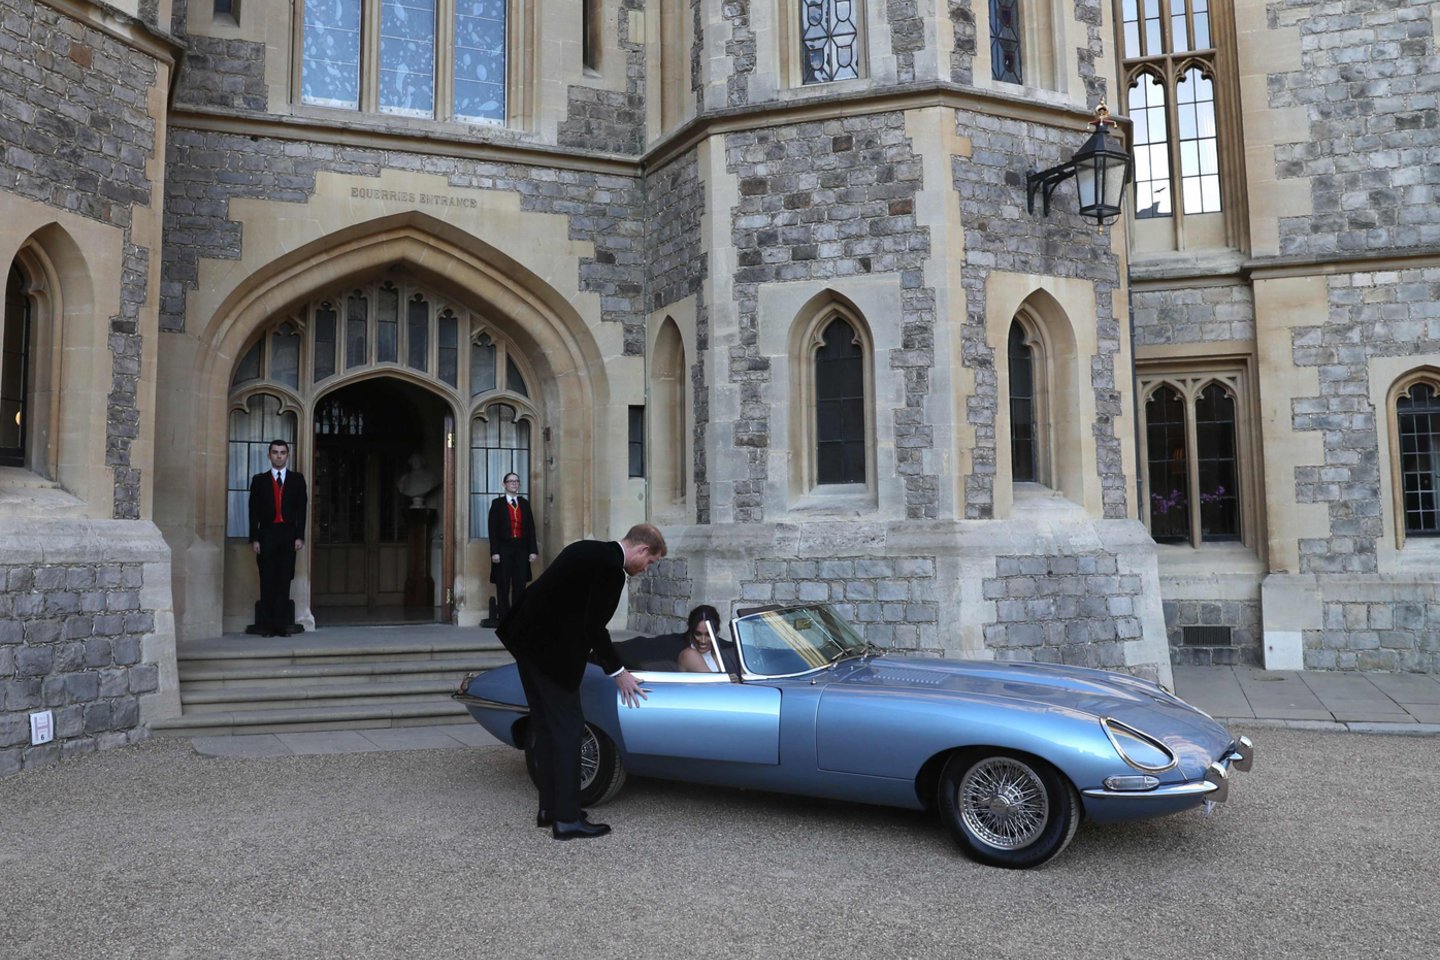  Vienintelį kol kas važiuojantį prototipą savo vestuvėse su amerikiečių aktore Megham Markle vairavo Princas Harry.<br> AFP/Scanpix nuotr.